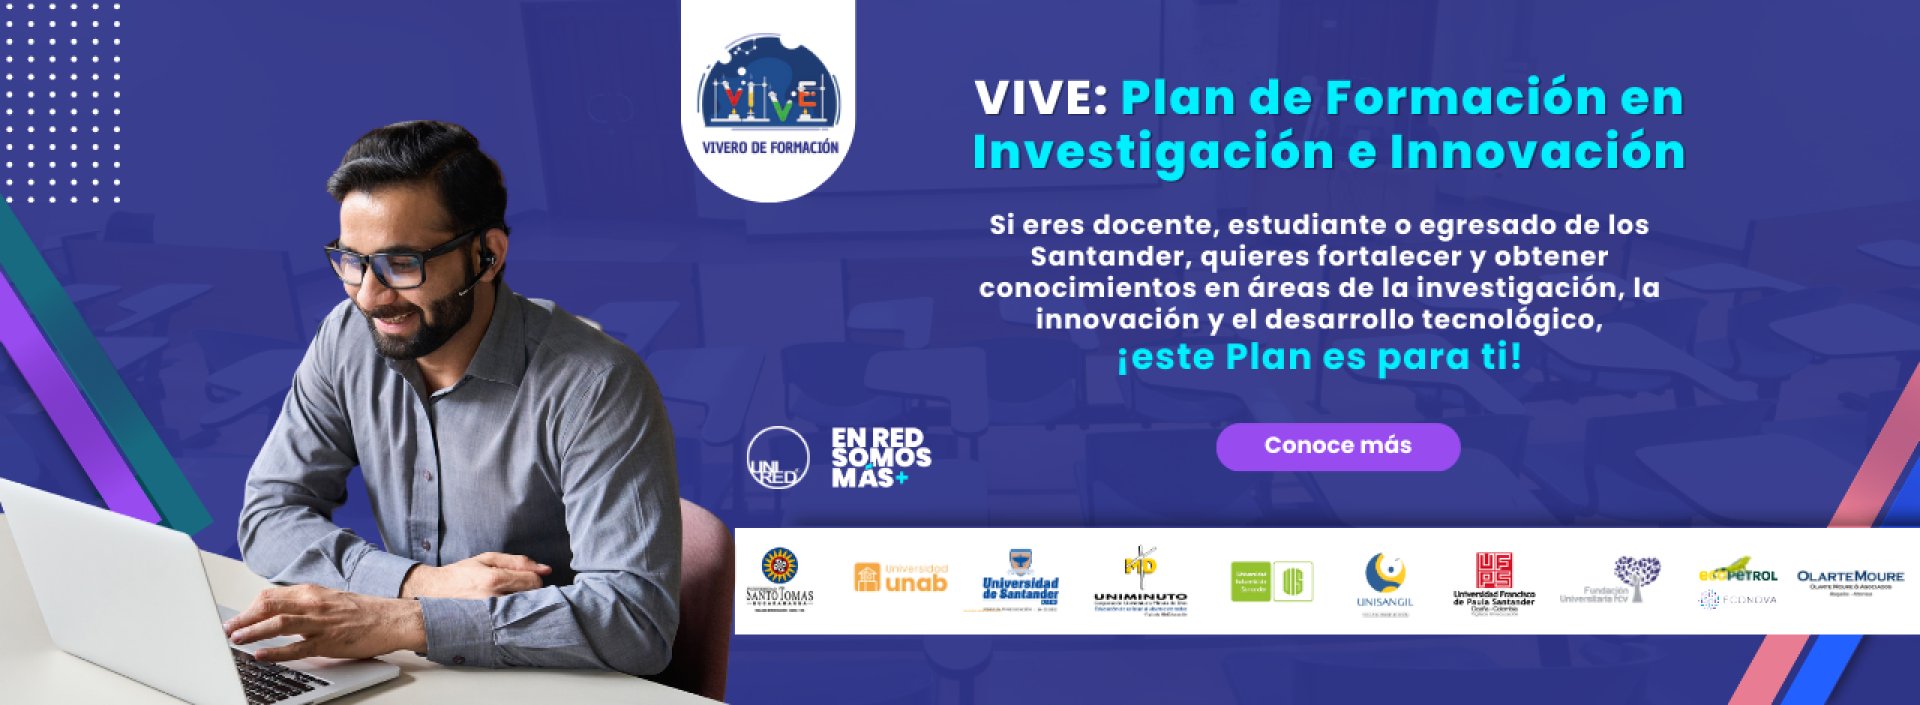 Lanzamiento de VIVE: Plan de formación en investigación e innovación